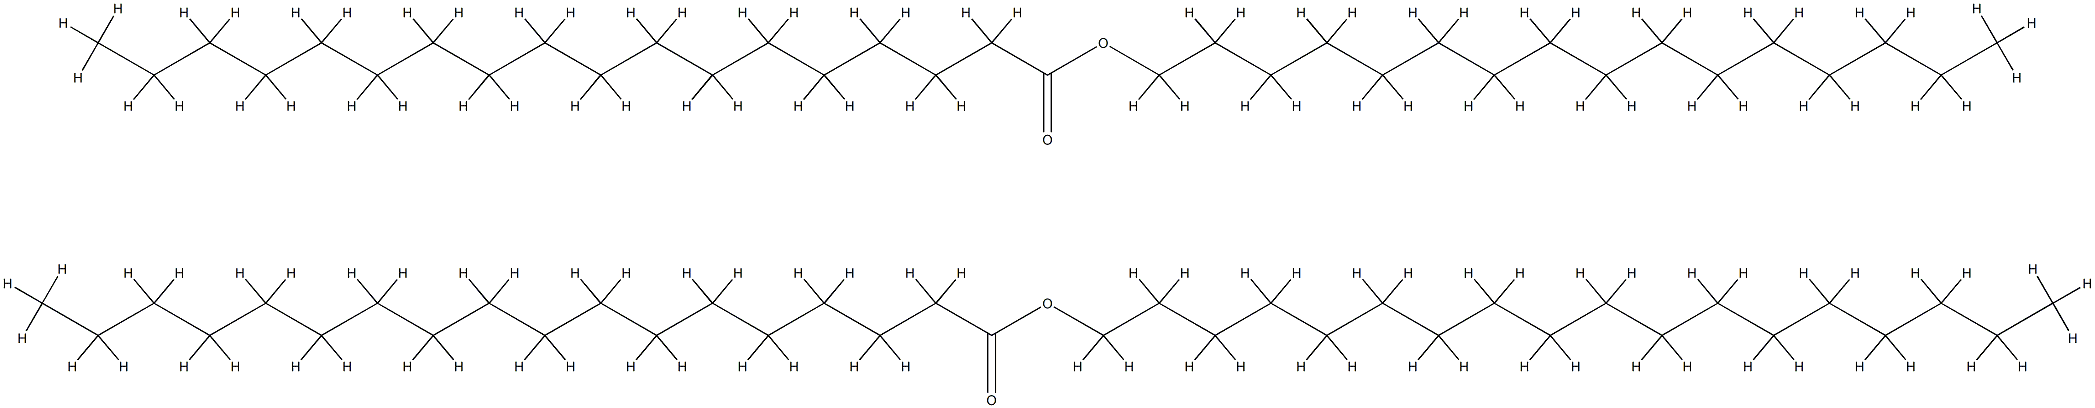 十八烷酸-C16-18-烷基酯